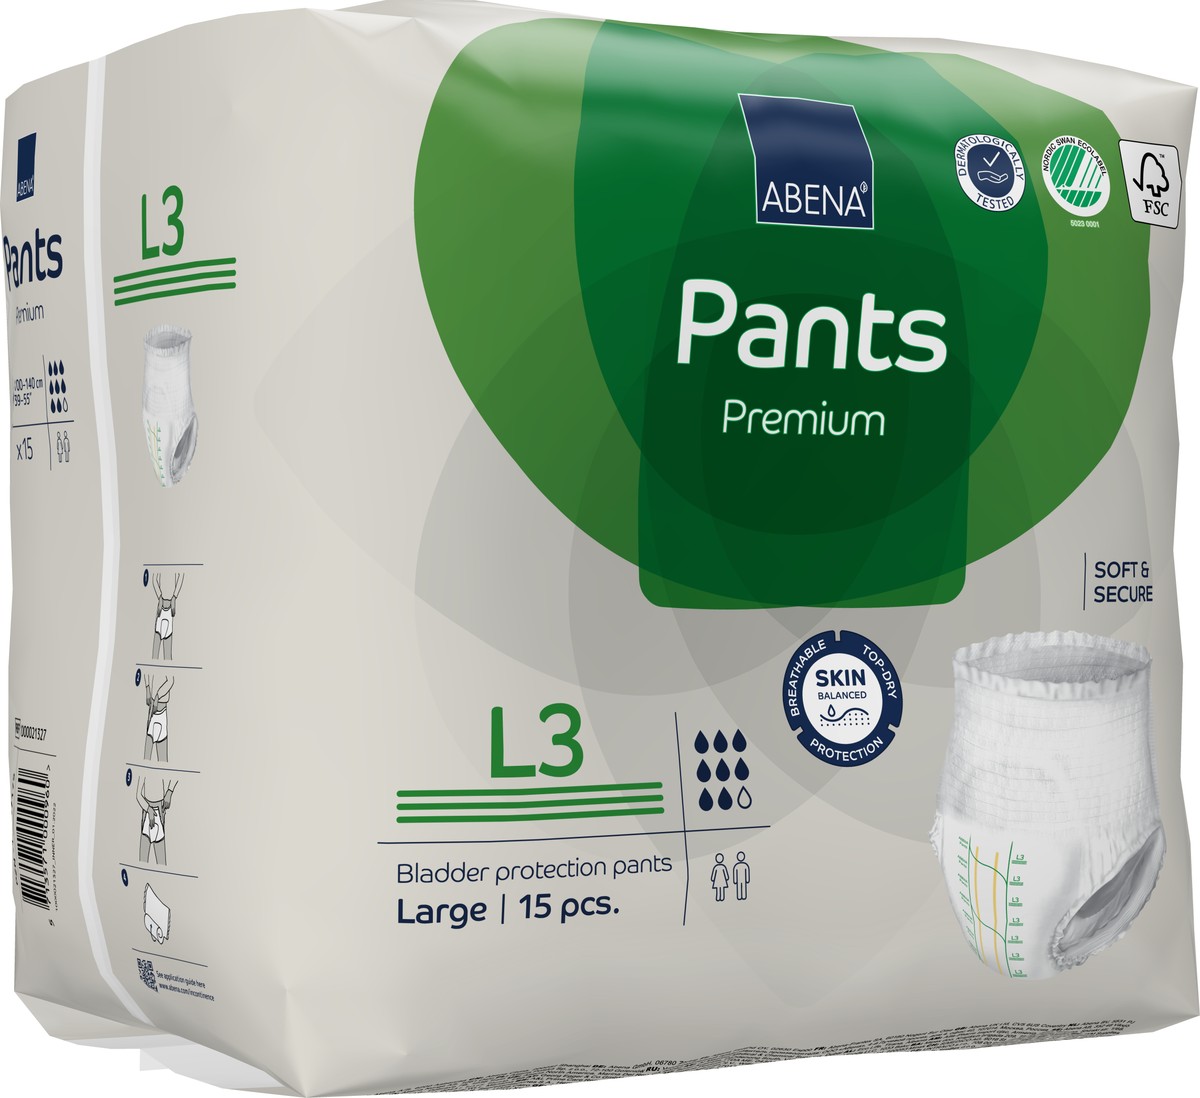 Foto do produto Fralda Abena Pants Premium Calça Tam. L3 C/ 15 UNID Ref: 41078 - Abena